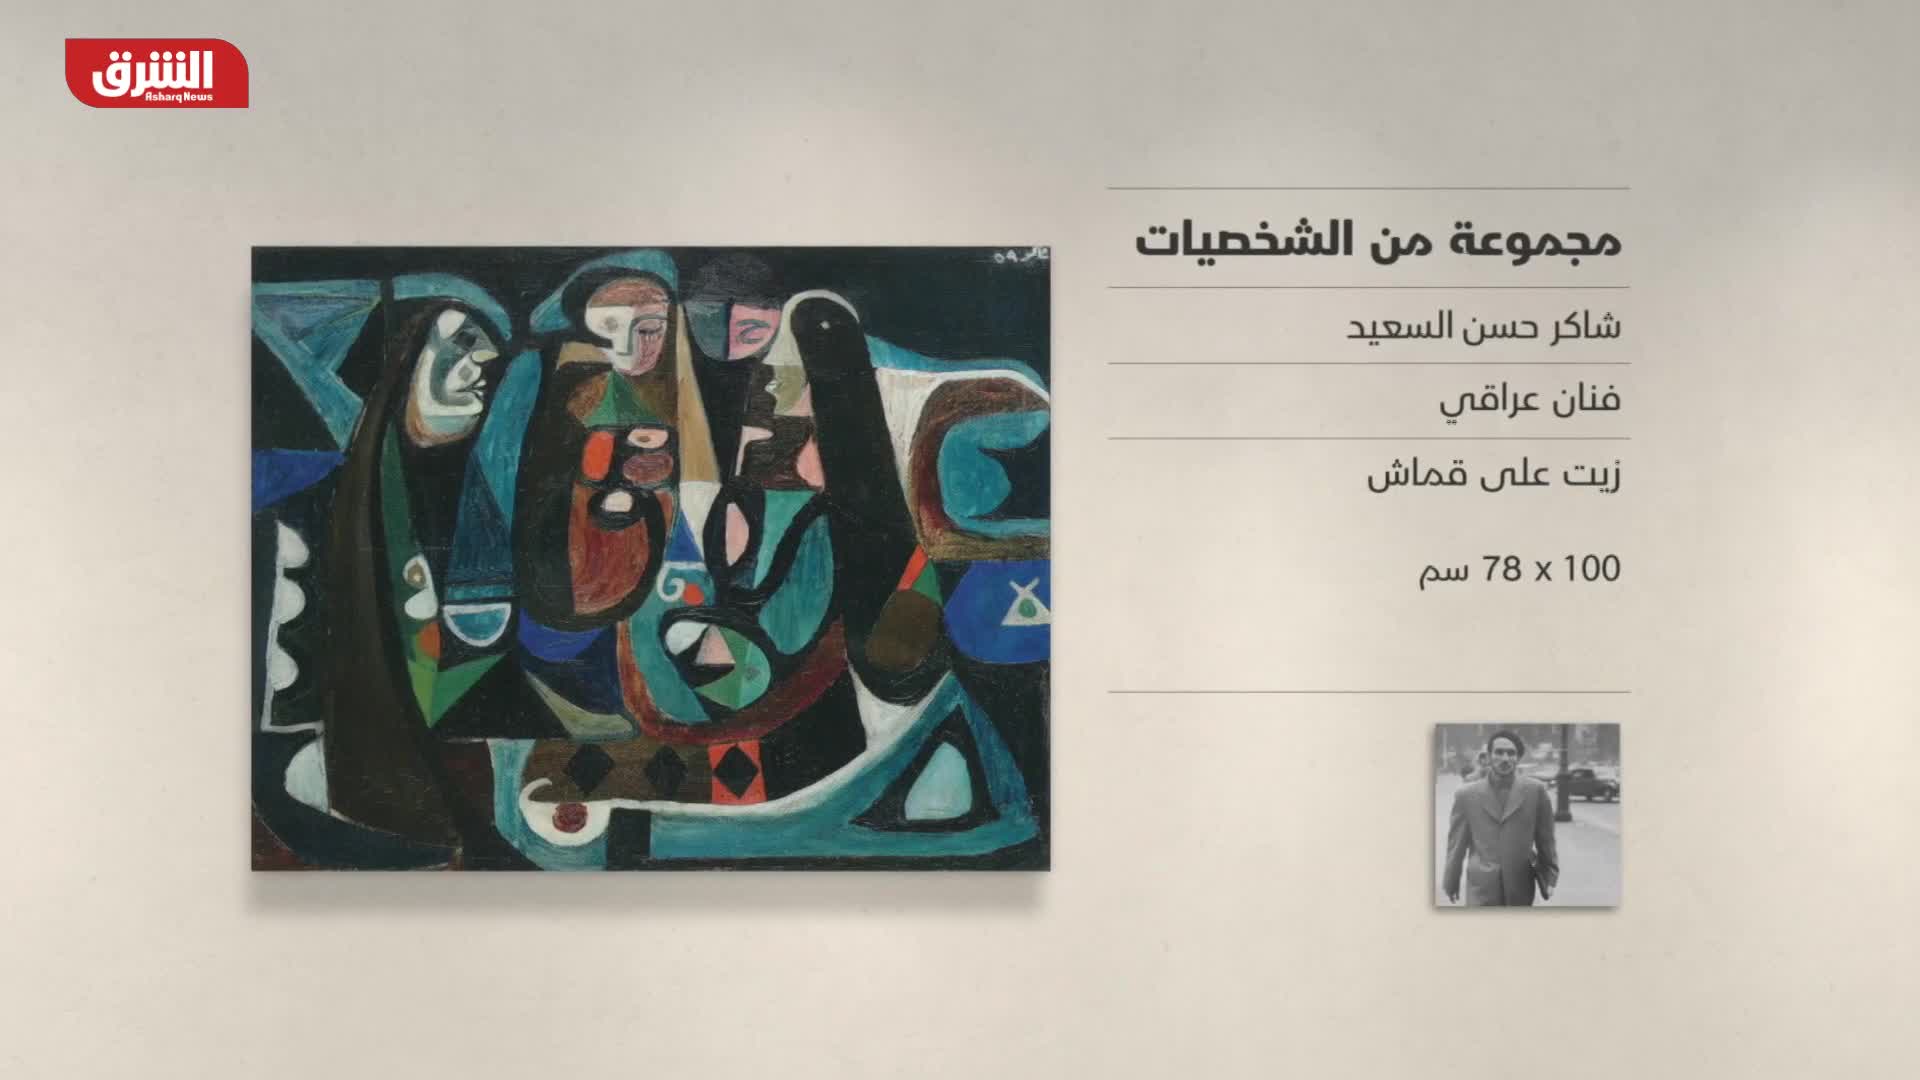 غاليري الشرق - "مجموعة من الشخصيات" شاكر حسن السعيد